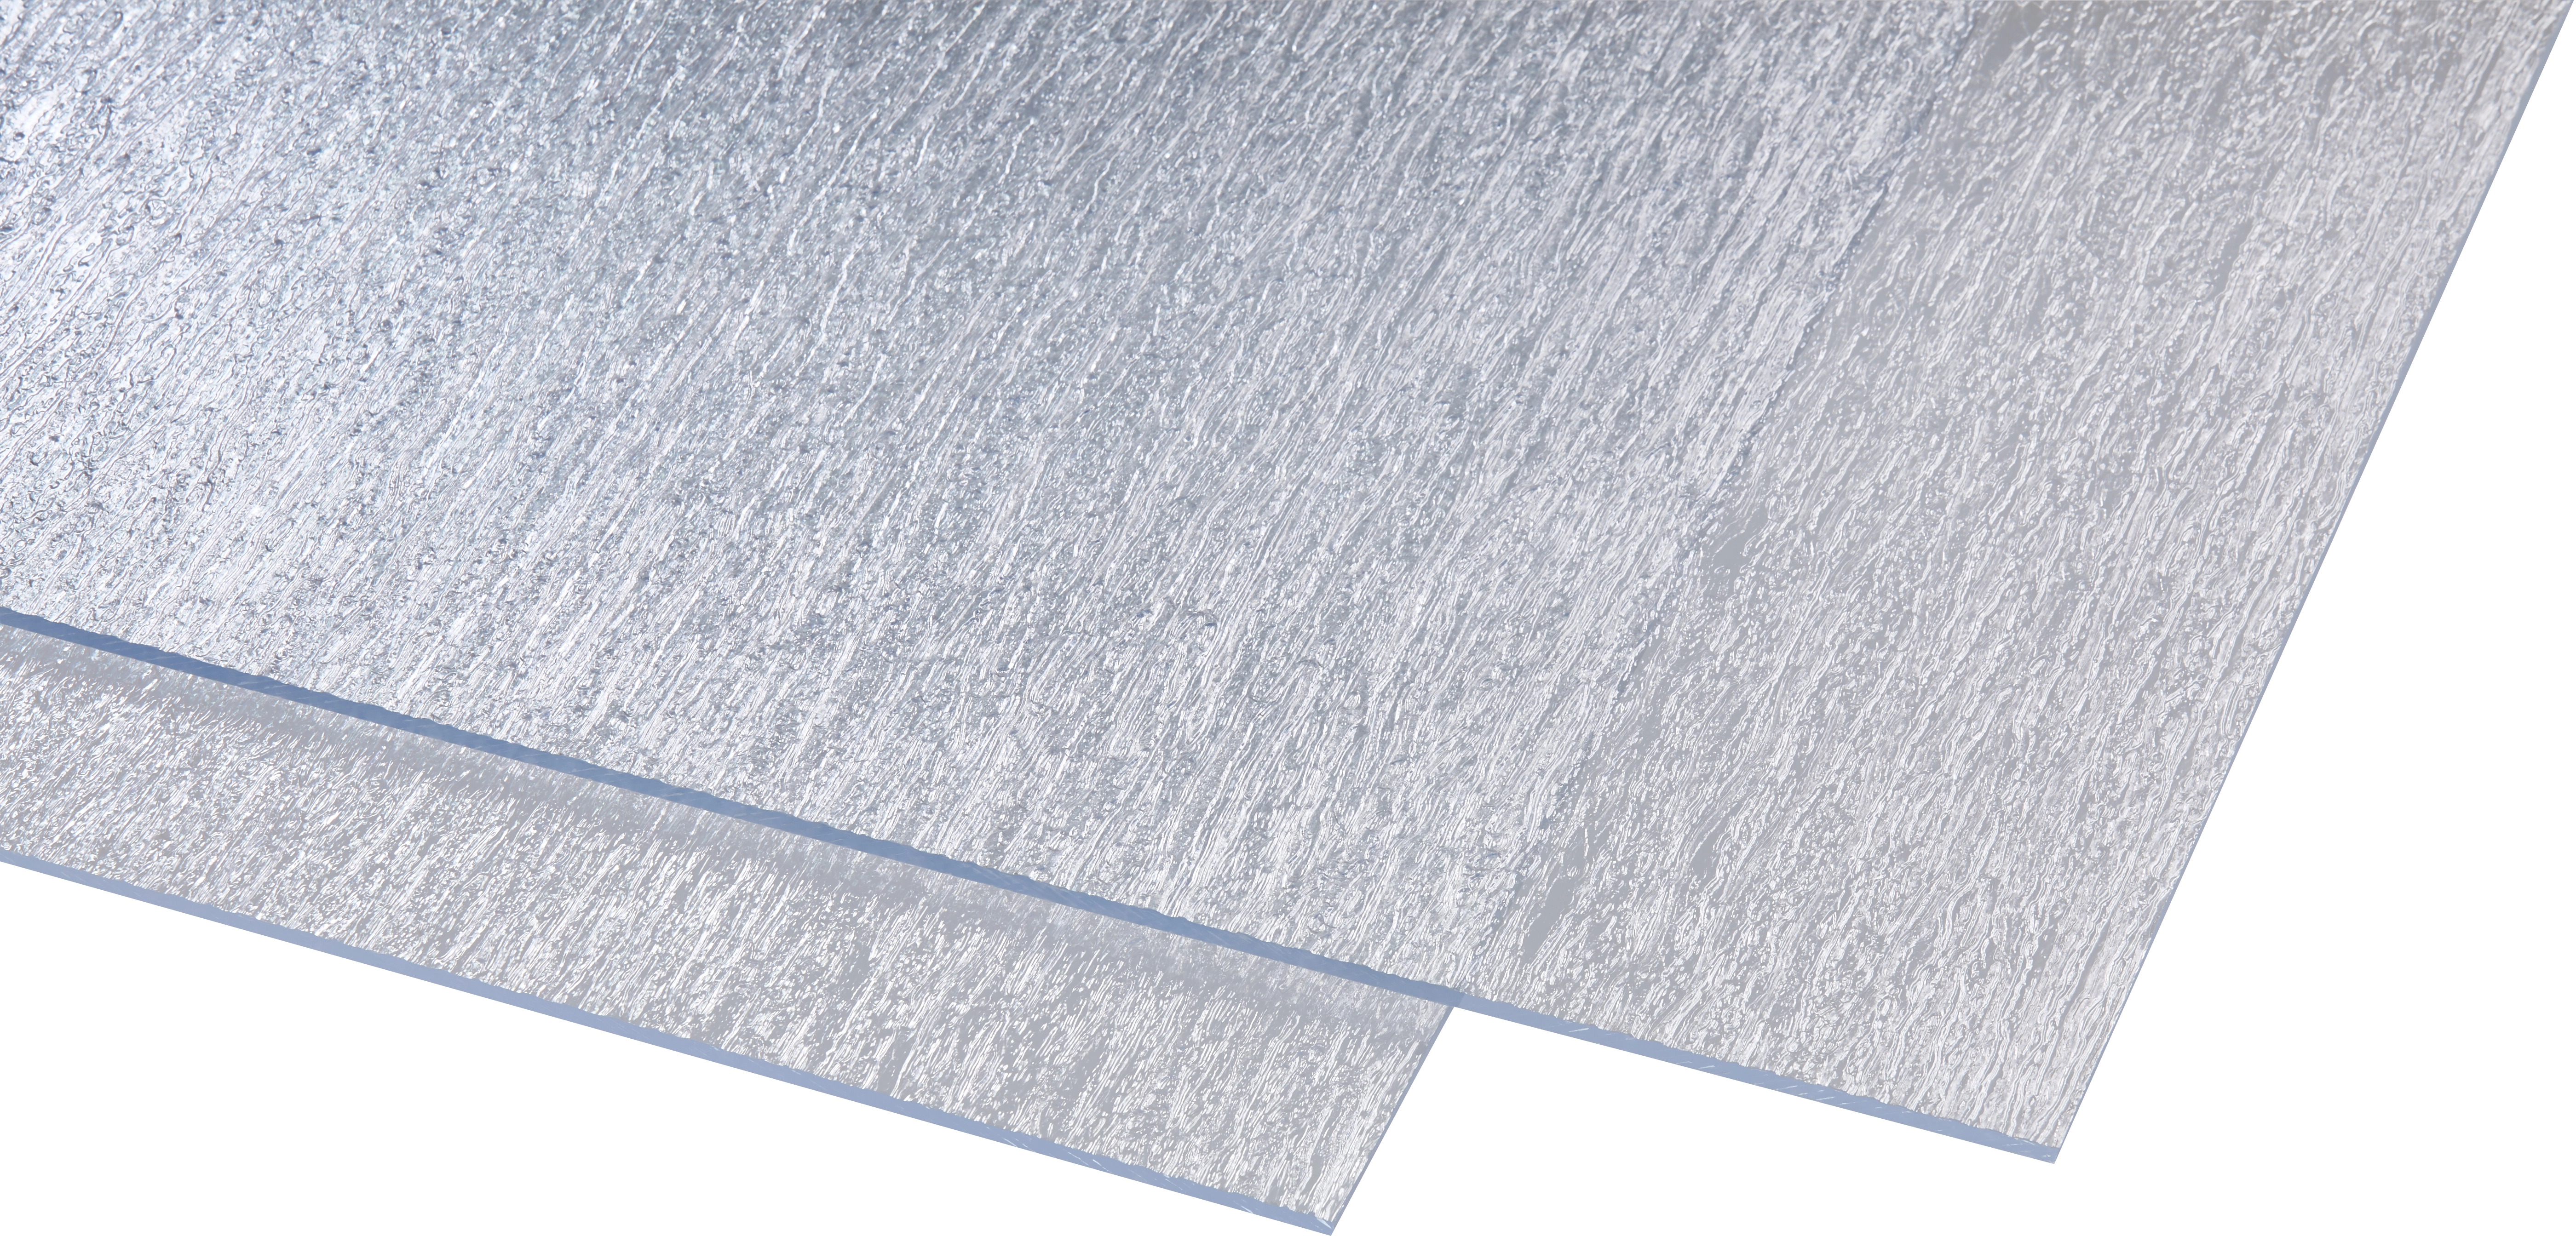 Polystyrol-Platte 5 mm Rinde fein Transparent 2000 mm x 1000 mm kaufen  bei OBI